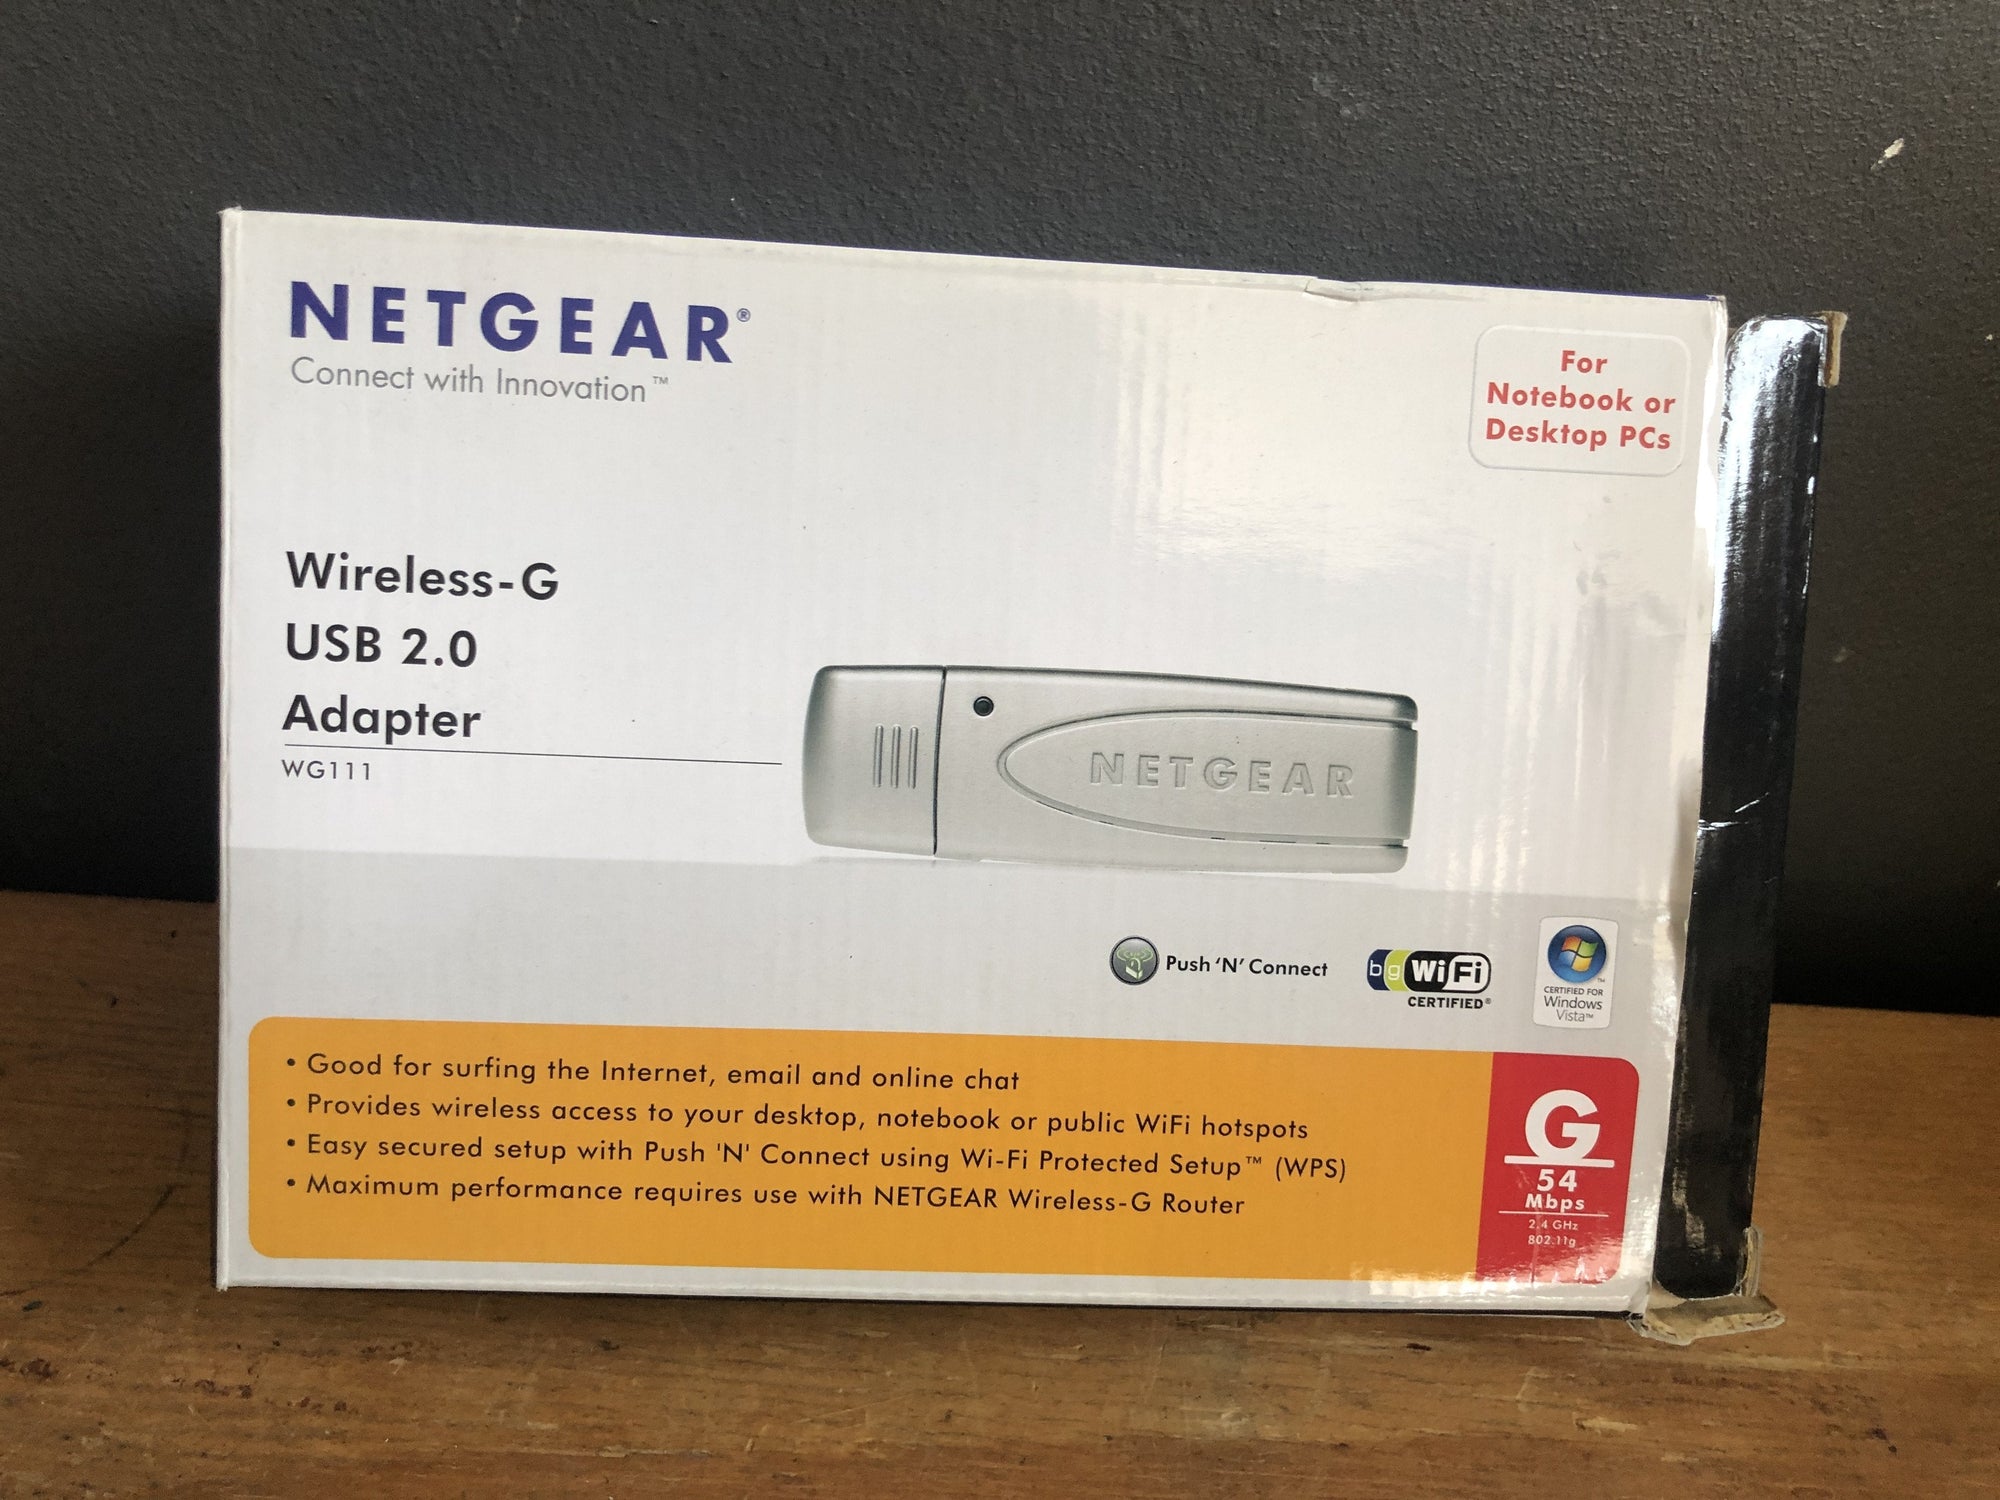 Netgear Wireless G USB 2.0 Adapter - 2ndhandwarehouse.com